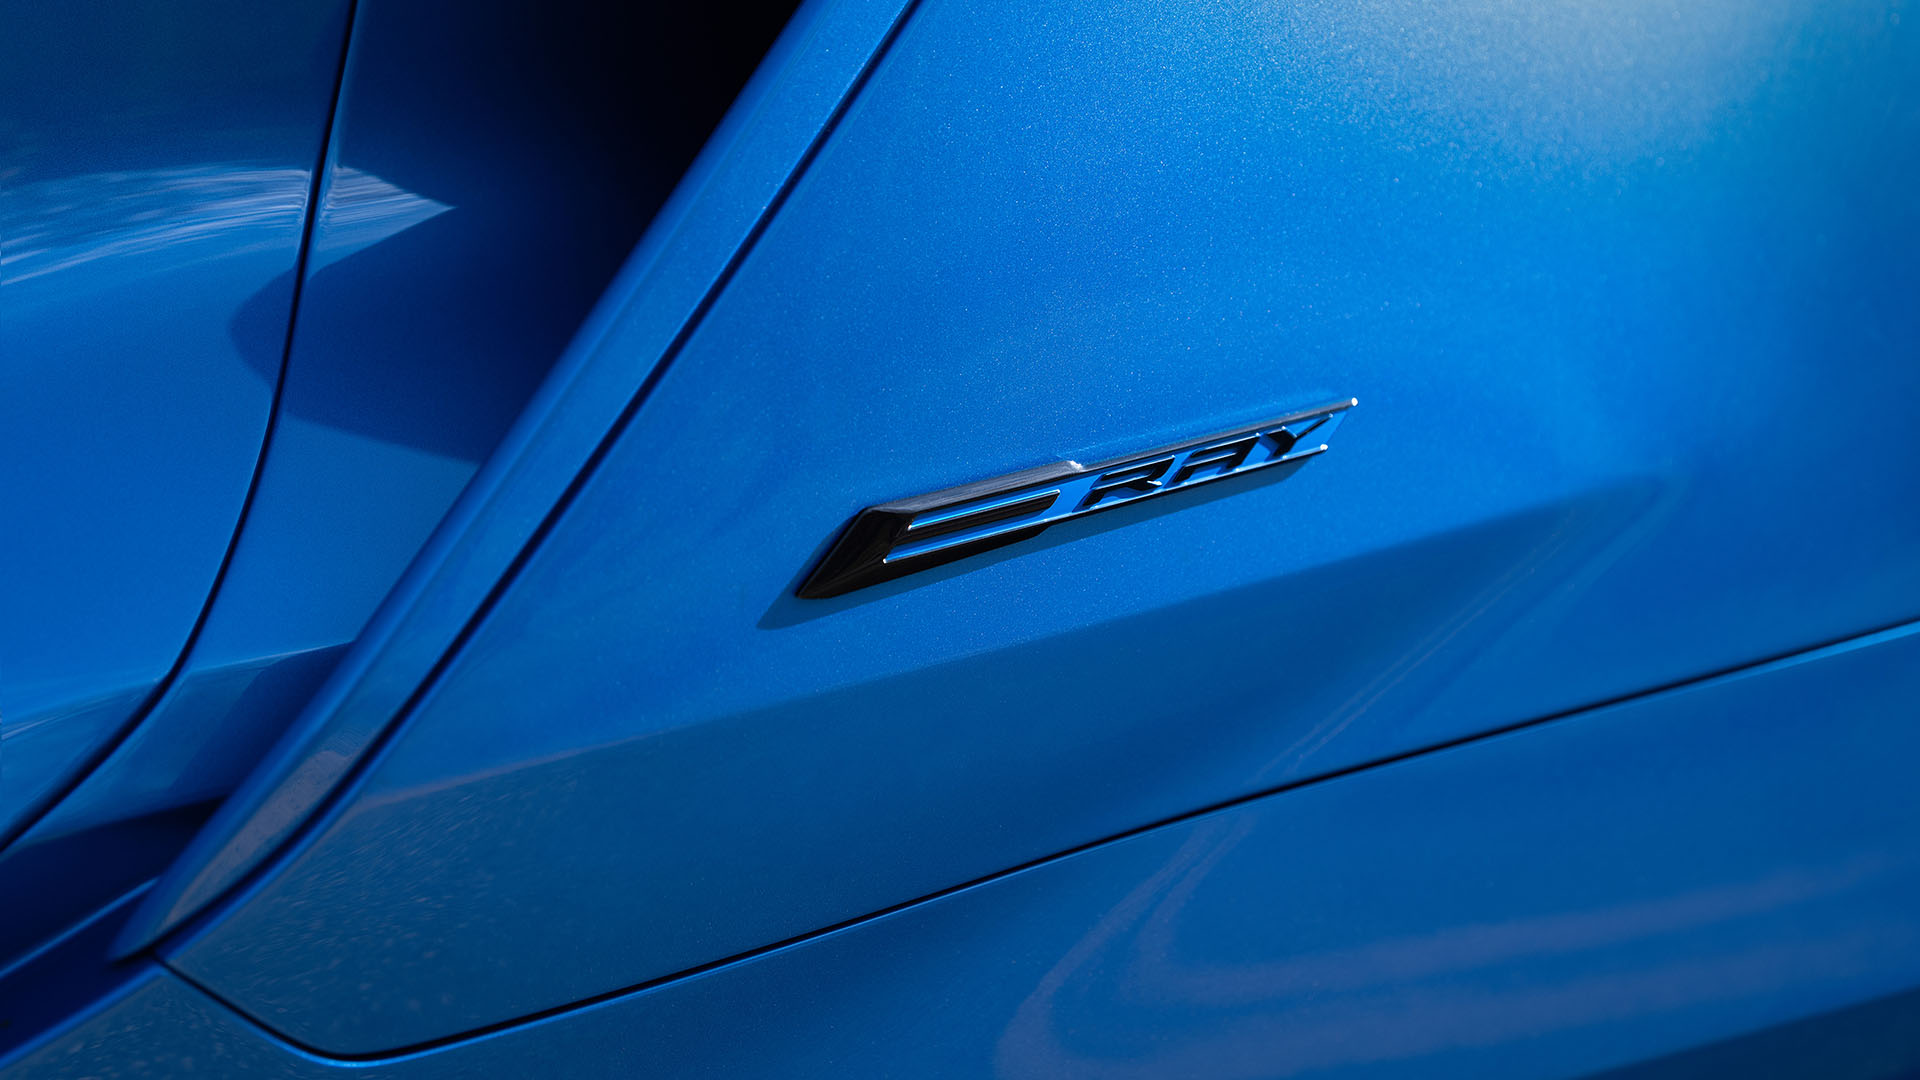 E-Ray badge on the new C8 hybrid Corvette